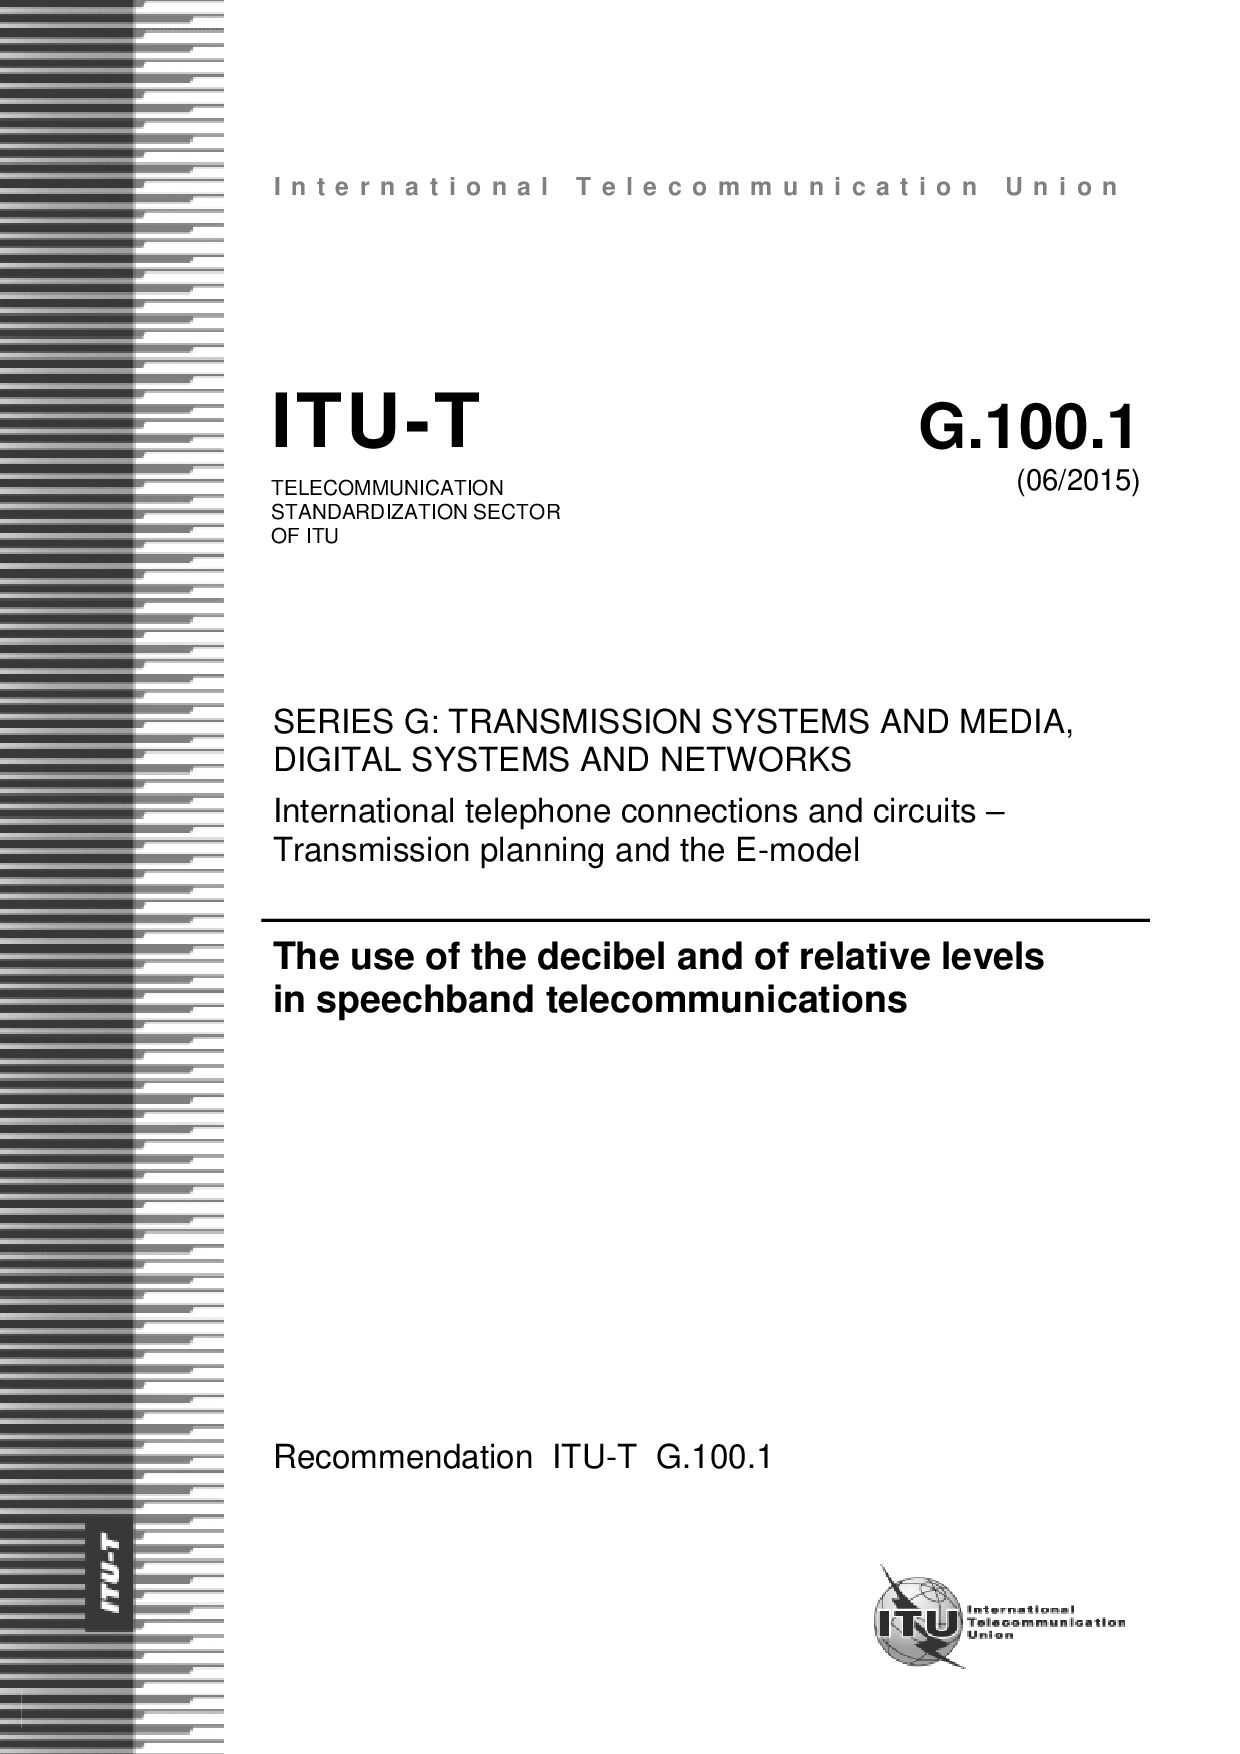 ITU-T G.100.1-2015